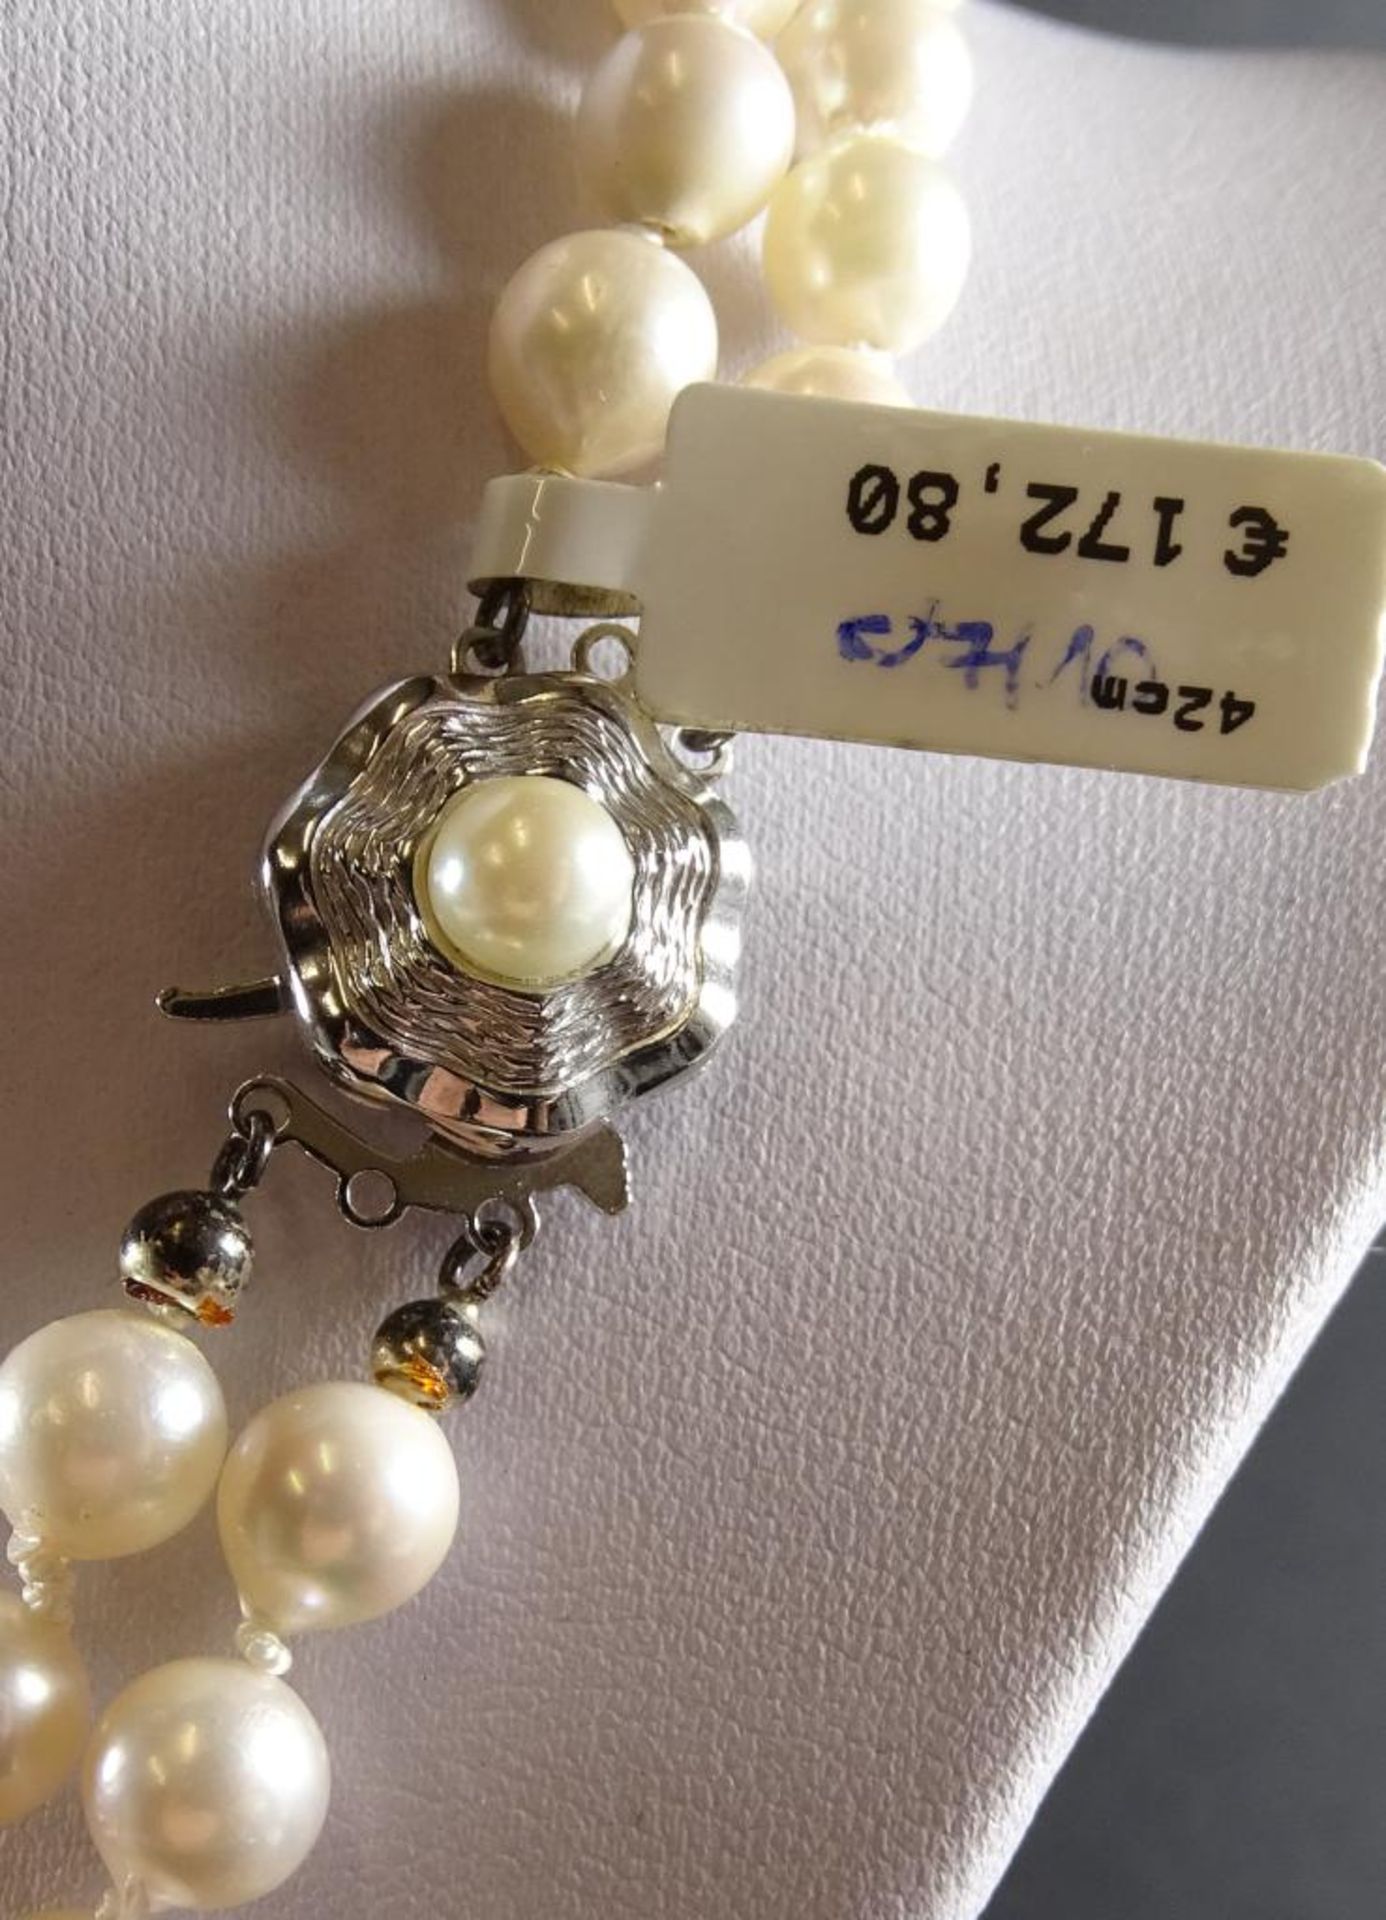 2-Reihige Zuchtperlen Halskette mit Silberschliesse -925-,L-41cm, Perlen d- 6,8-7,4mm,Neu und - Bild 3 aus 5